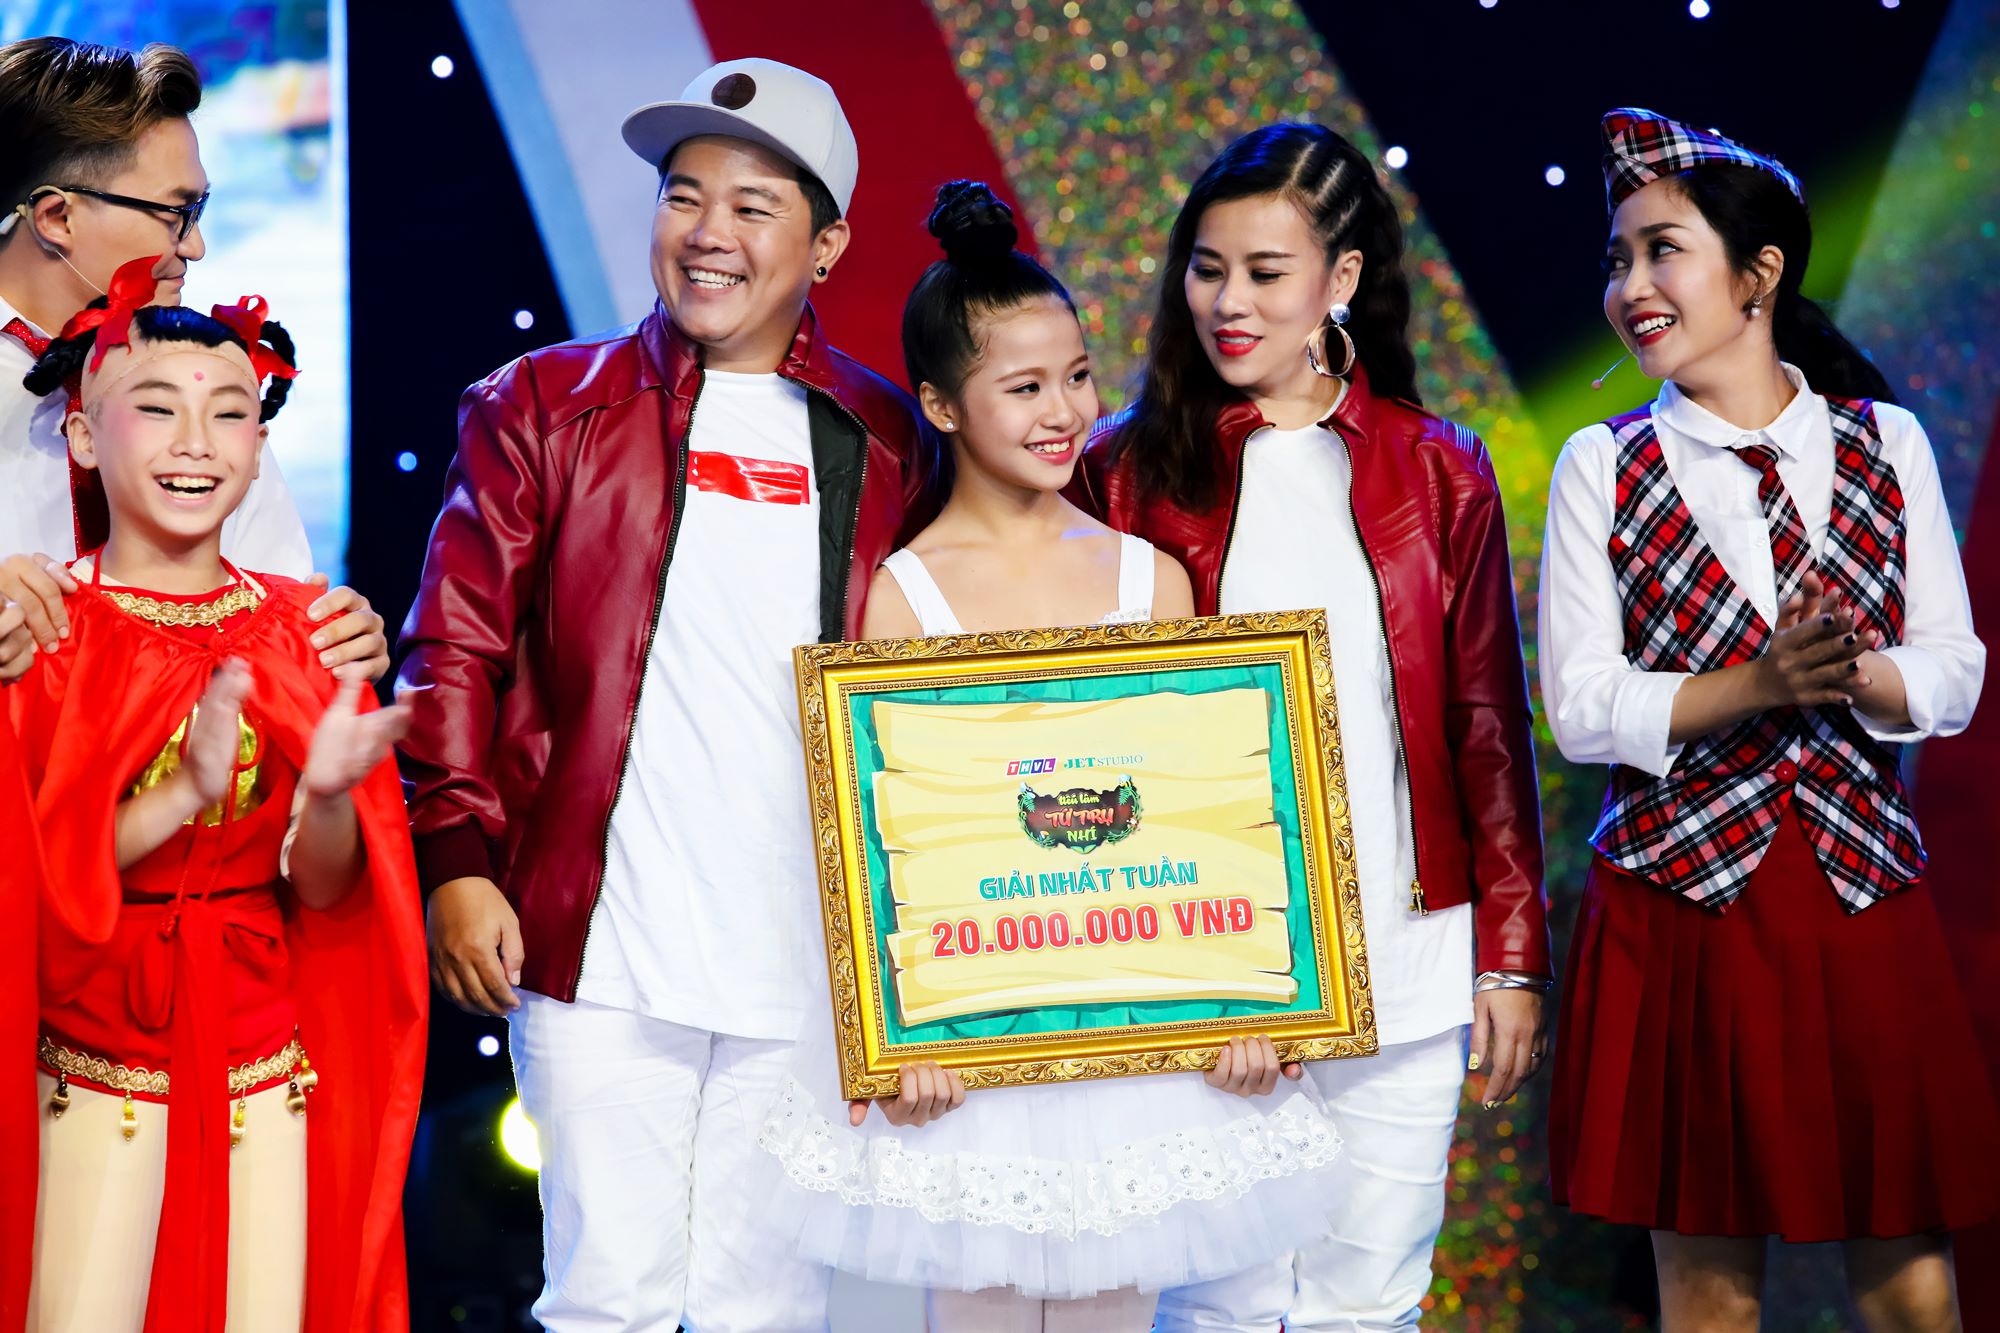 Hoàng Vân chính là thí sinh nhí cùng cặp HLV Hoàng Mèo – Đại Ngọc Trâm bước vào đêm chung kết.